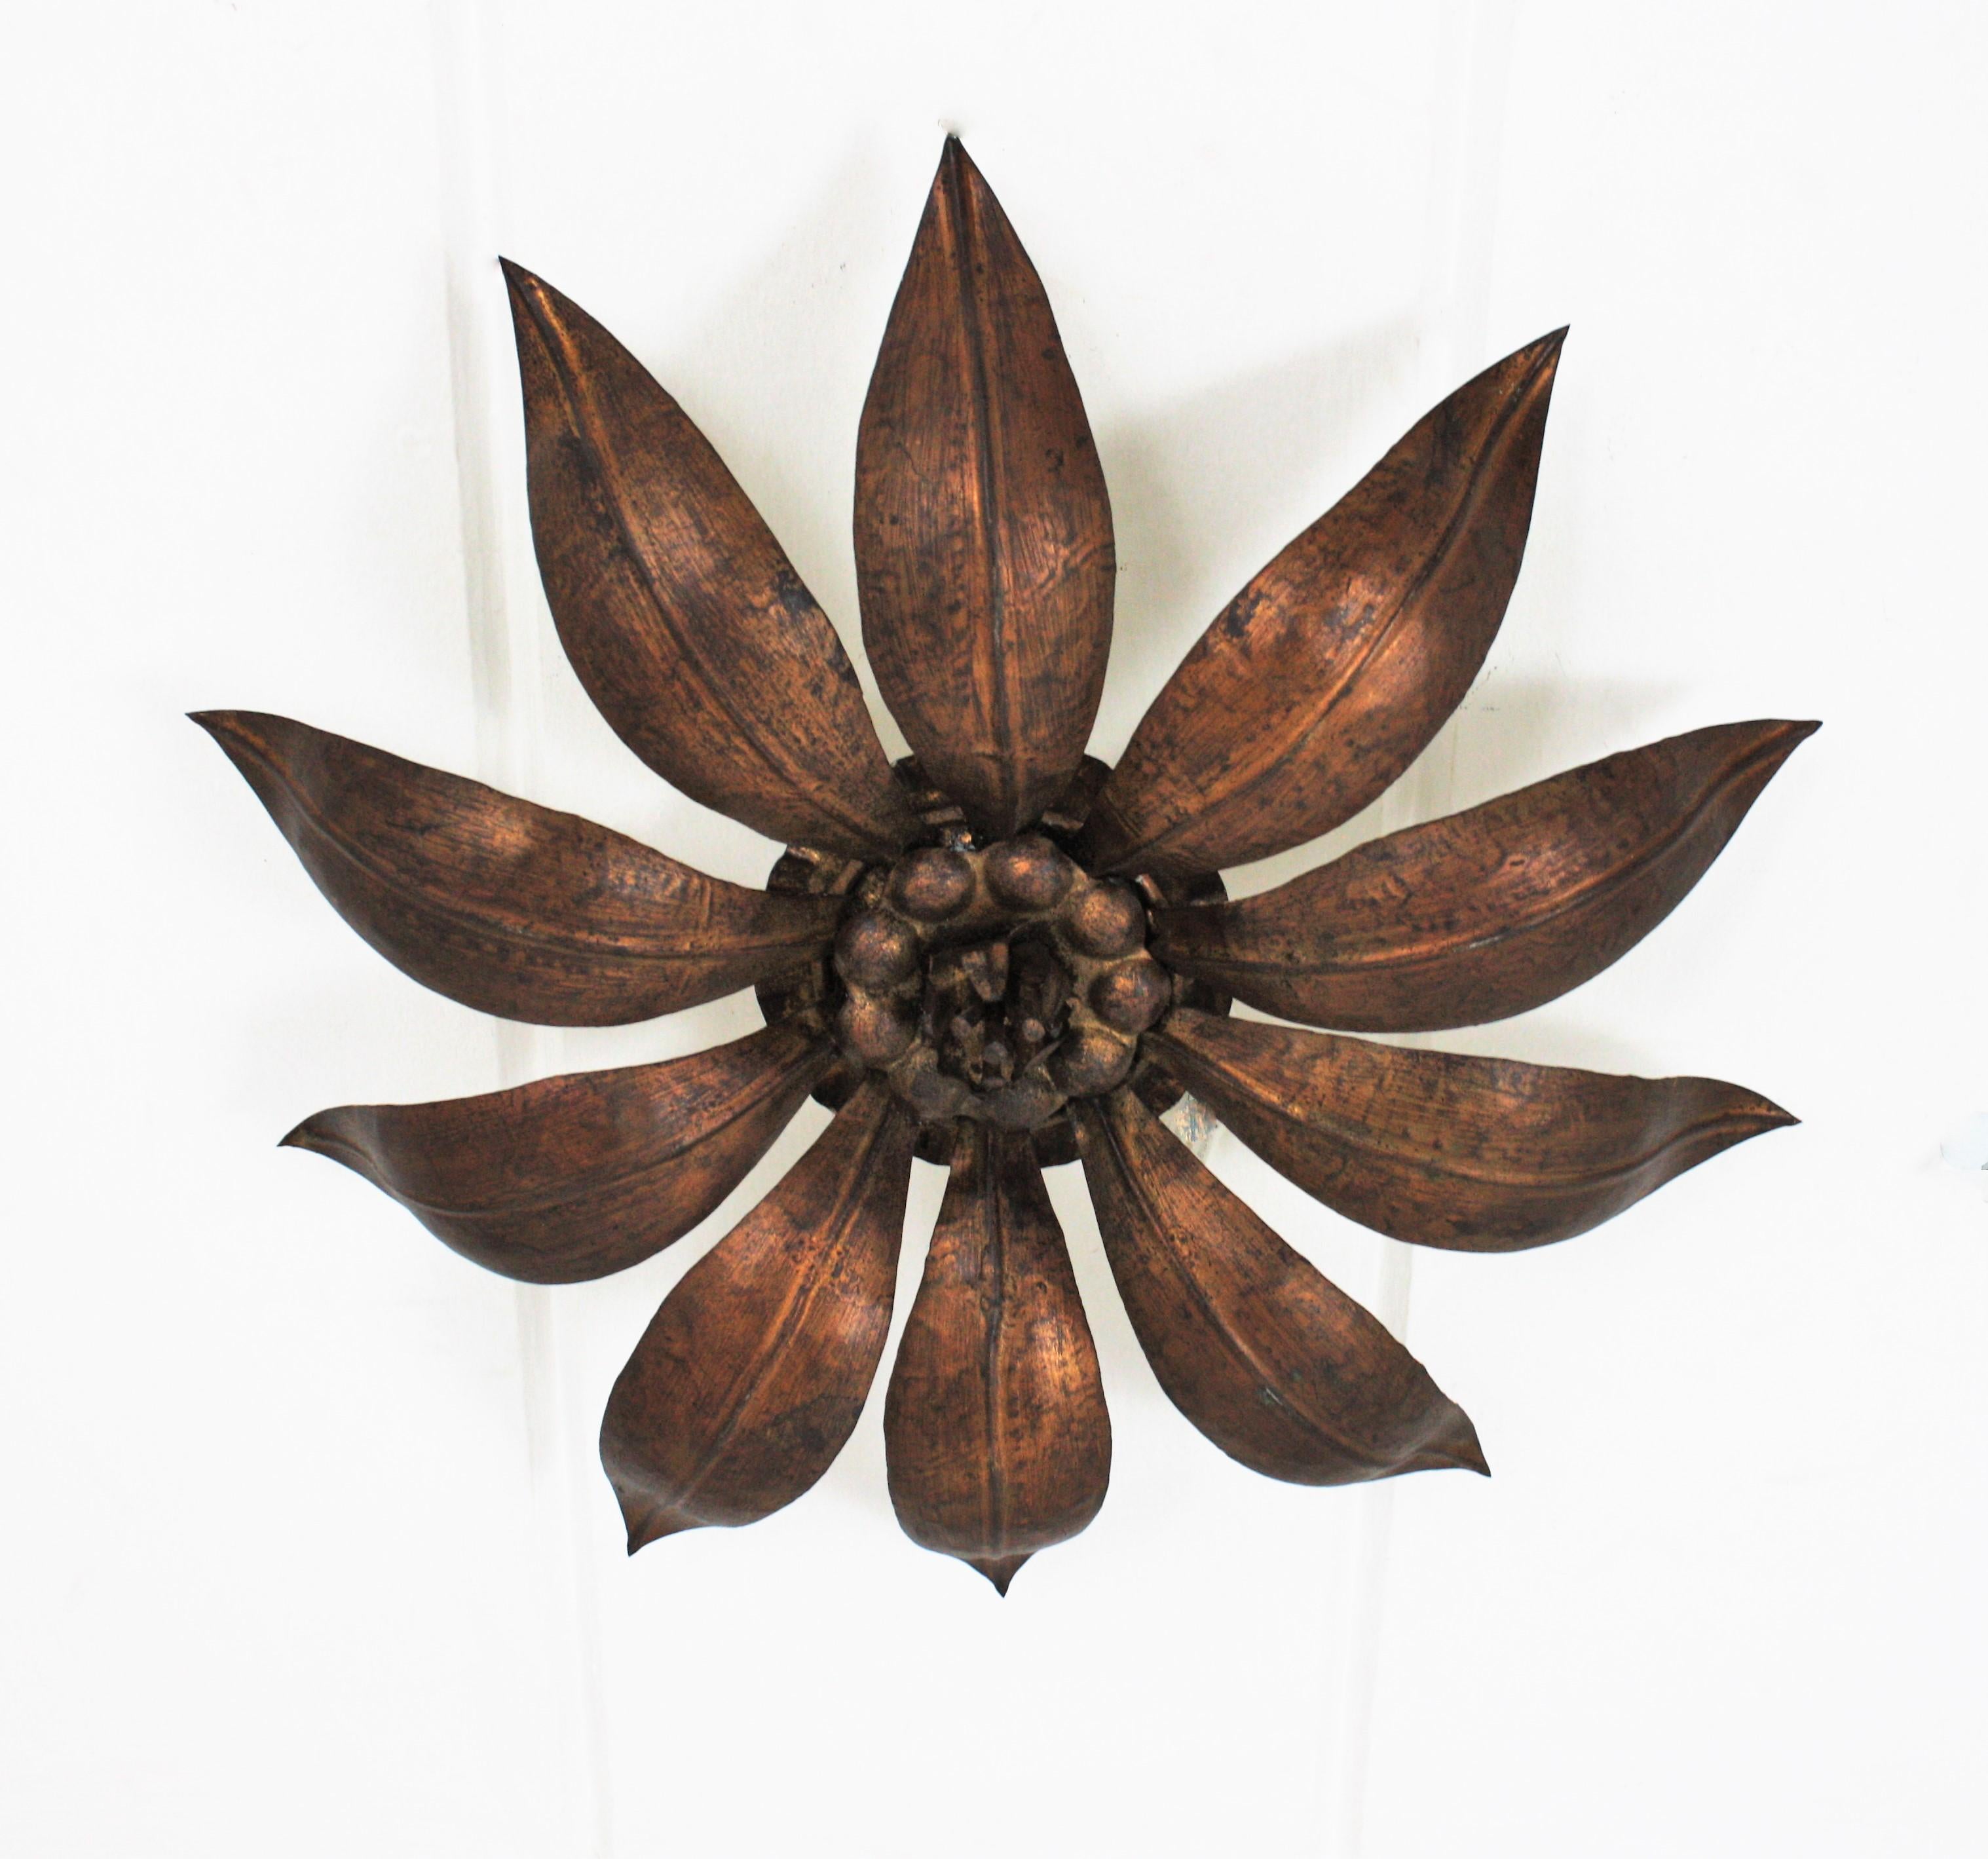 French Sunburst Flower Ceiling Light Fixture in Bronze Gilt Iron, 1940s For Sale 1